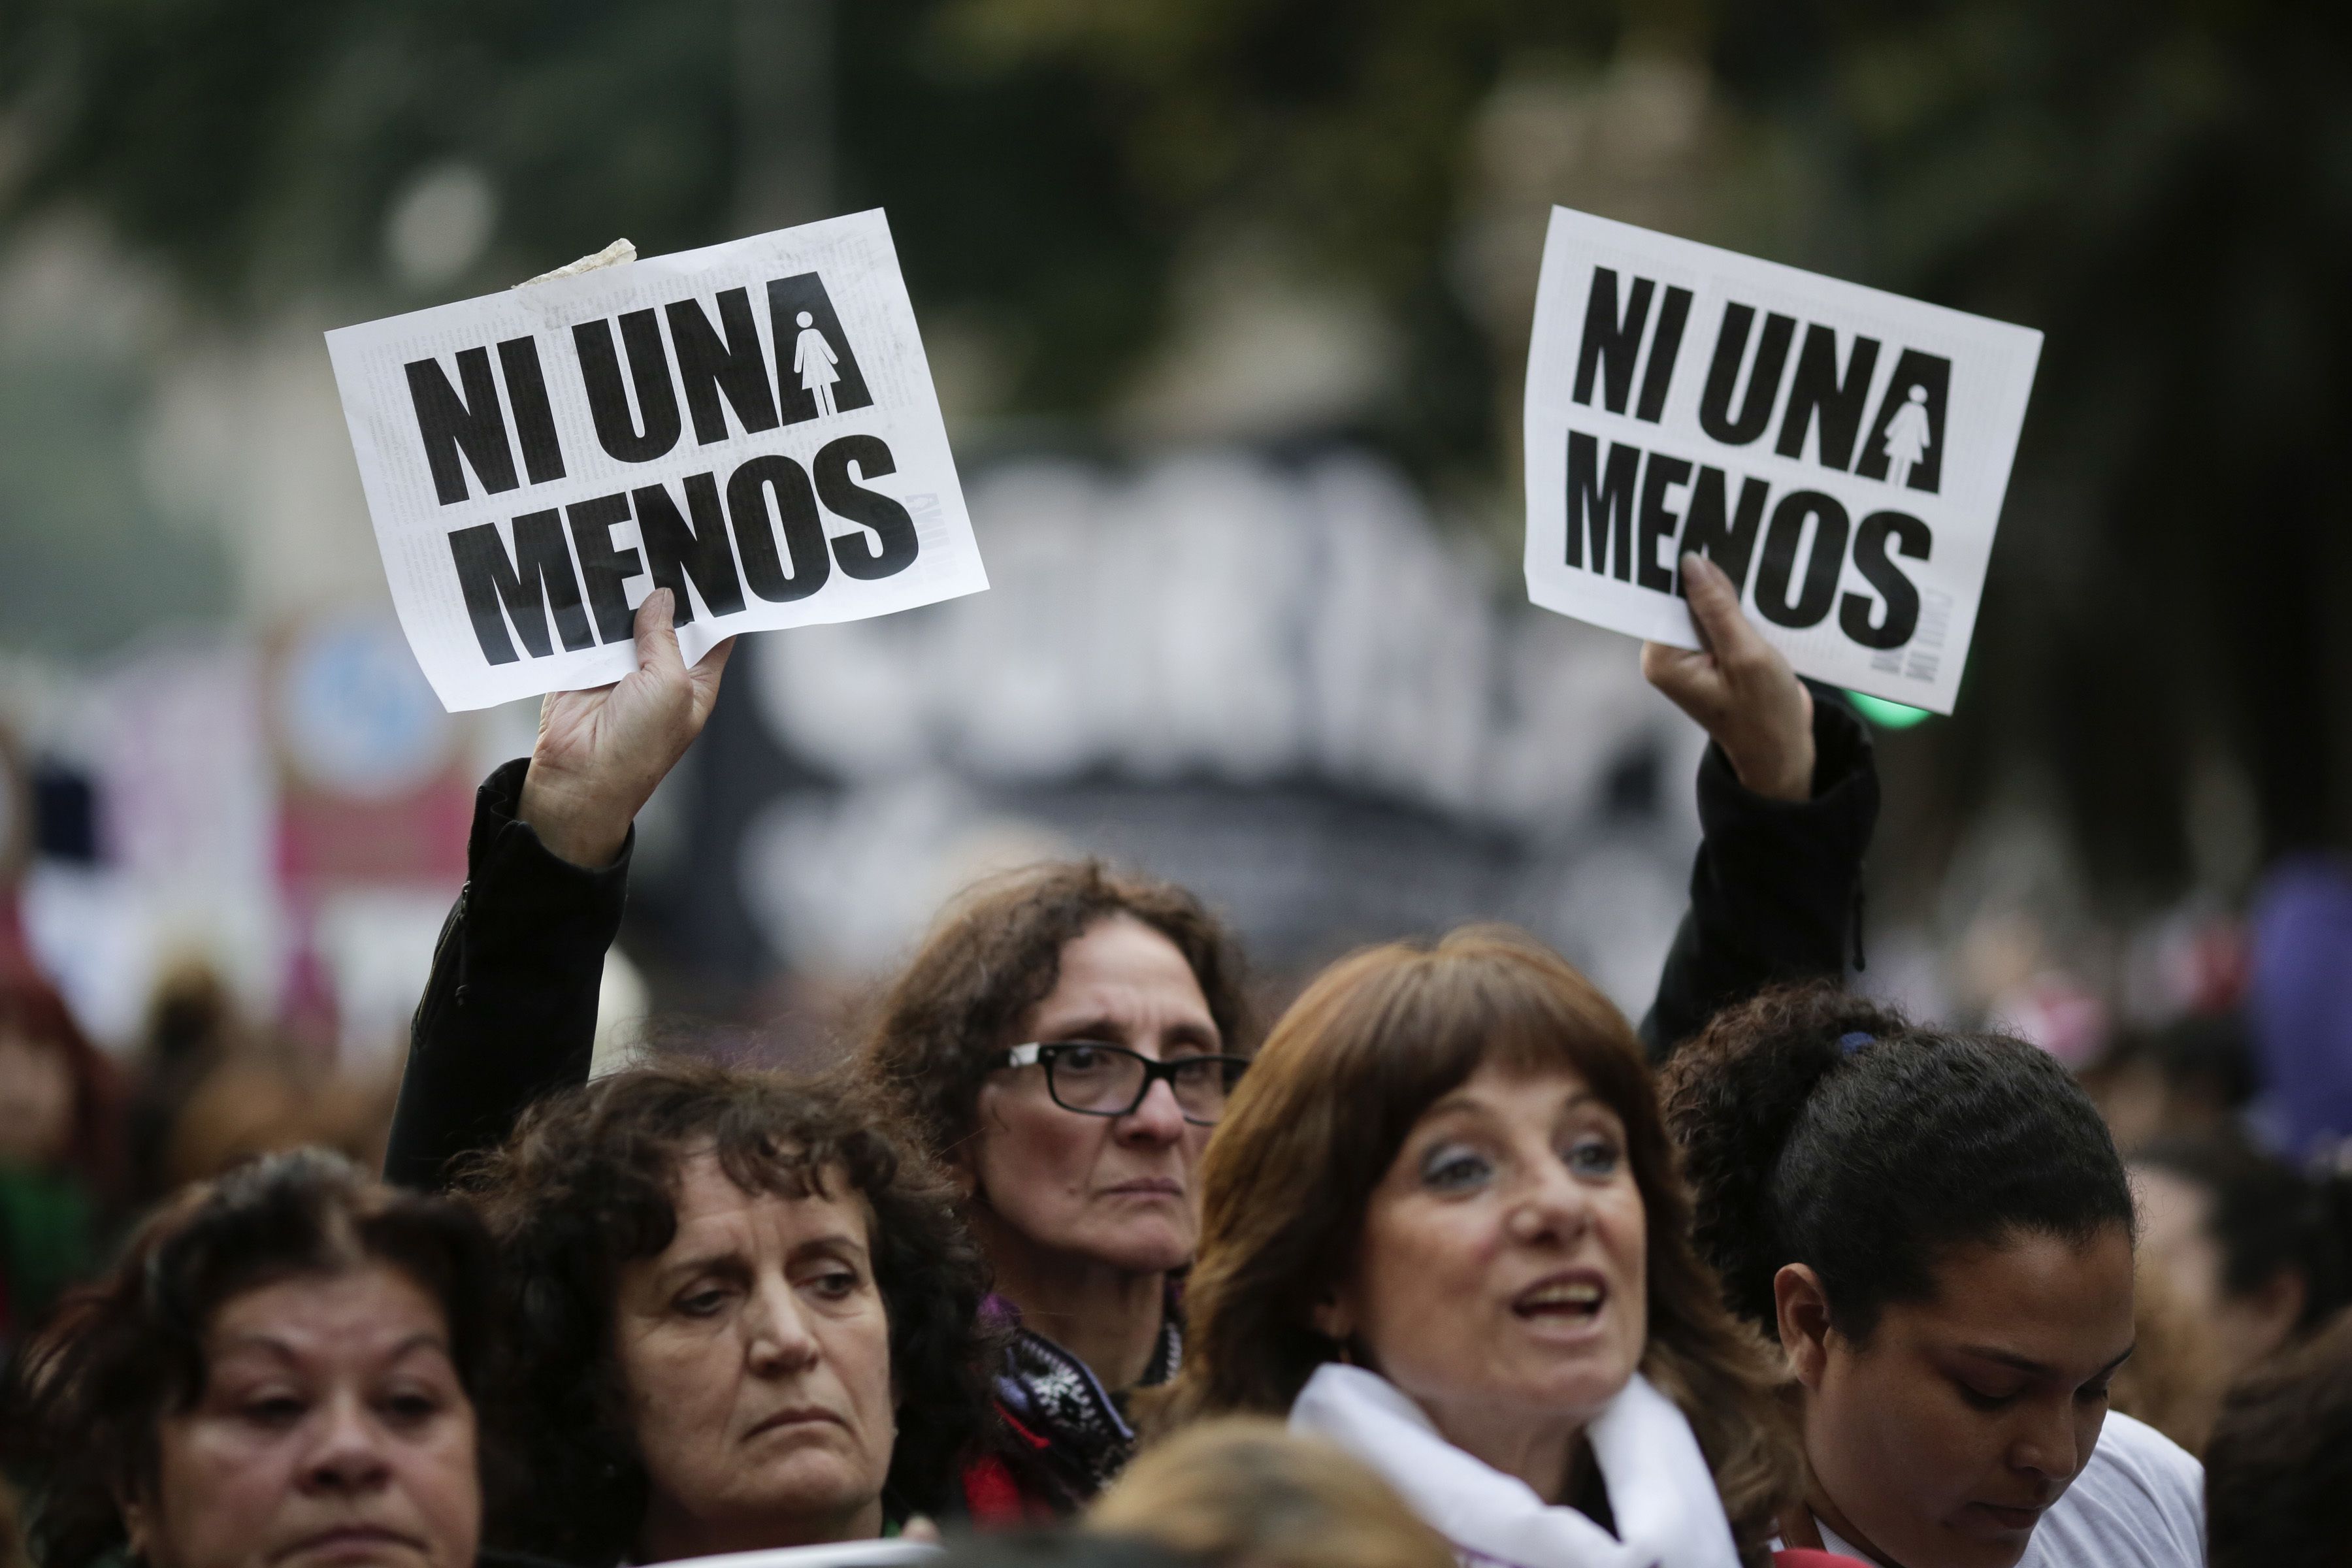 Mujeres participan en una multitudinaria marcha bajo la consigna “Ni una menos” a fin de reclamar medidas urgentes contra la violencia de género en Buenos Aires, Argentina, el viernes 3 de junio de 2016. (Foto AP / Victor R. Caivano)